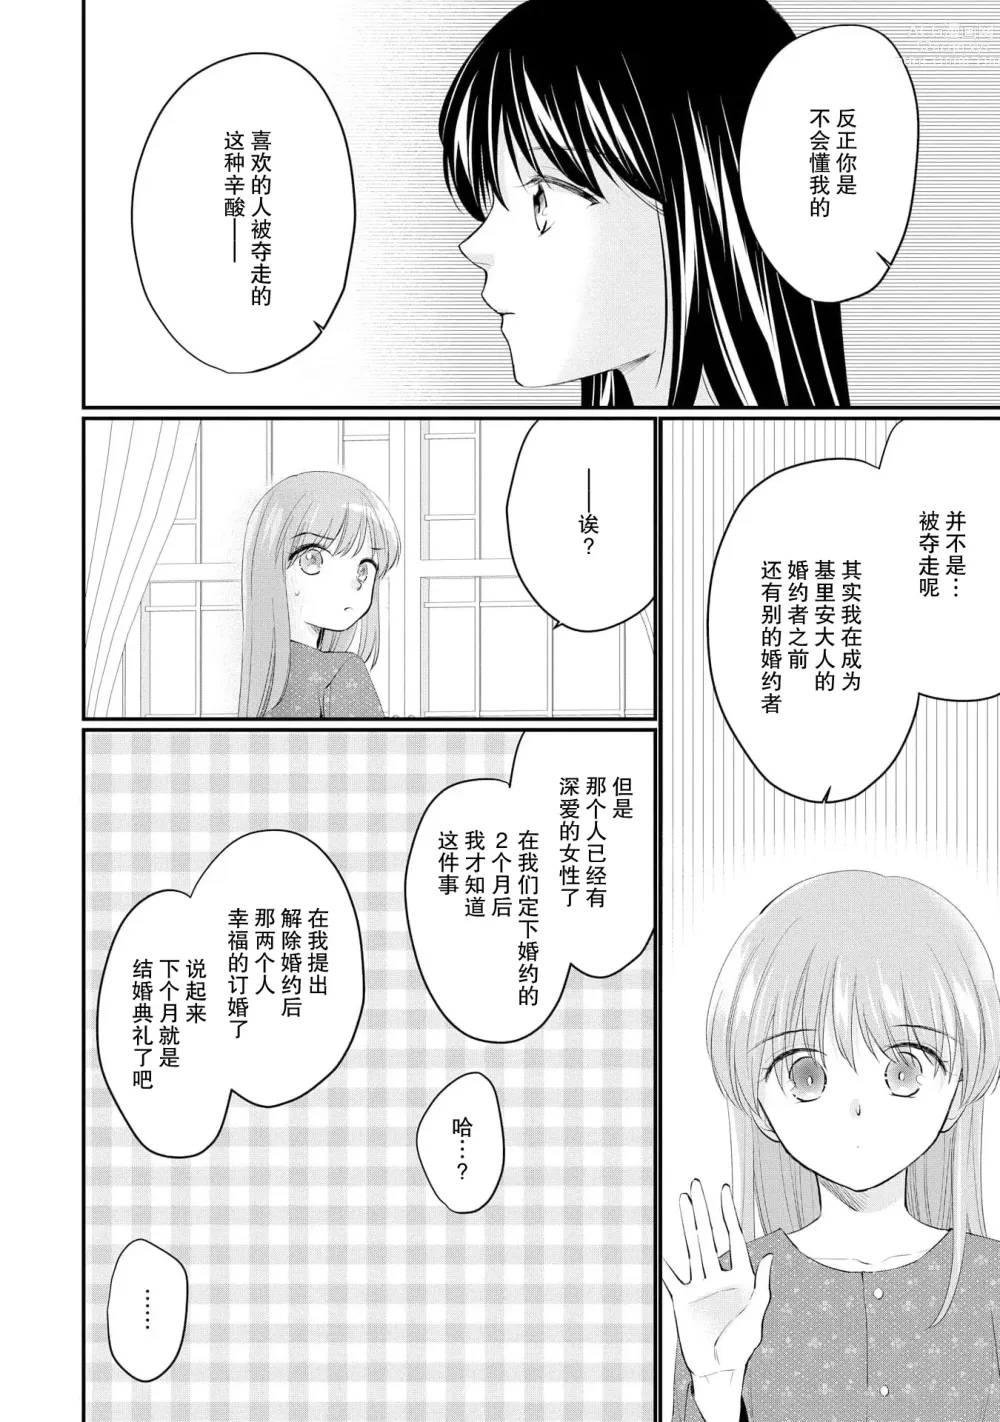 Page 284 of manga 新婚约者超宠我 1-11